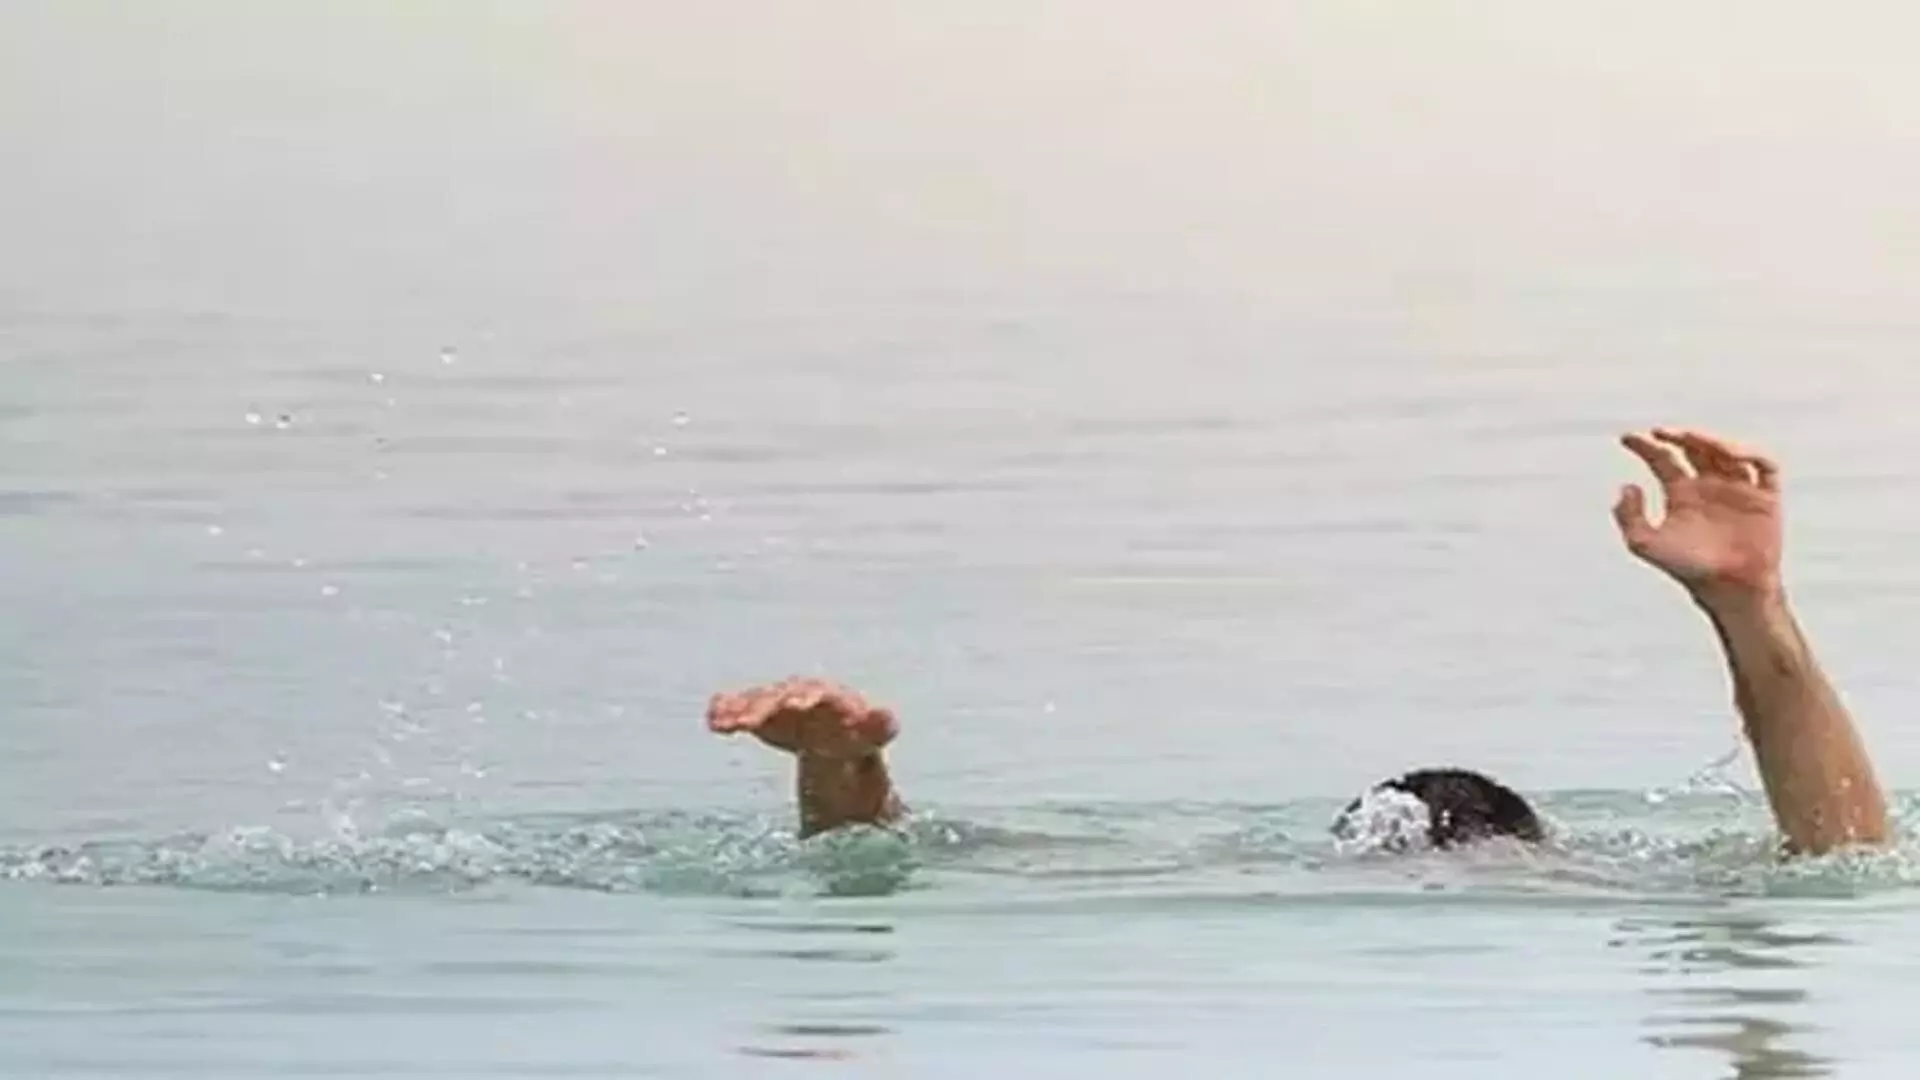 बोर्ड परीक्षा के बाद तैराकी करने गए दो छात्र समुद्र में डूबे, मचा कोहराम